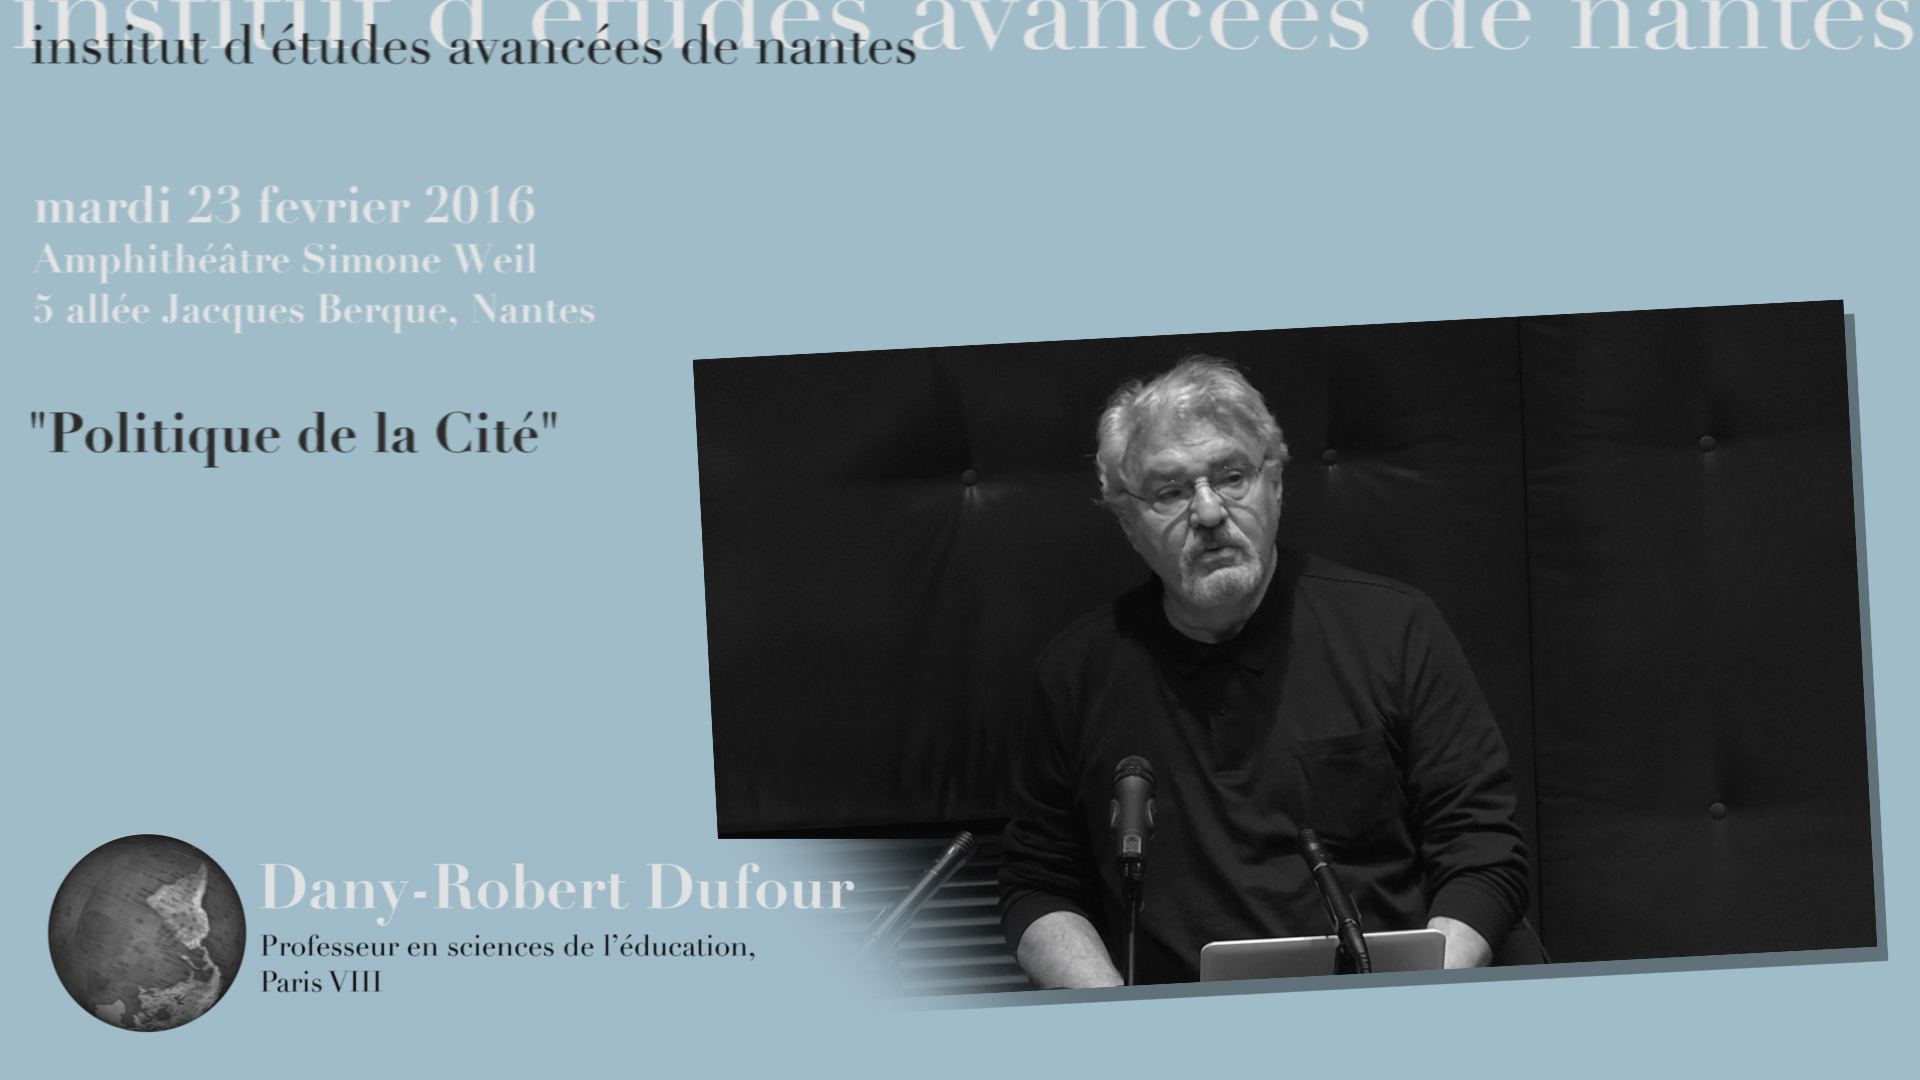 Dany Robert Dufour : "Politique de la Cité"